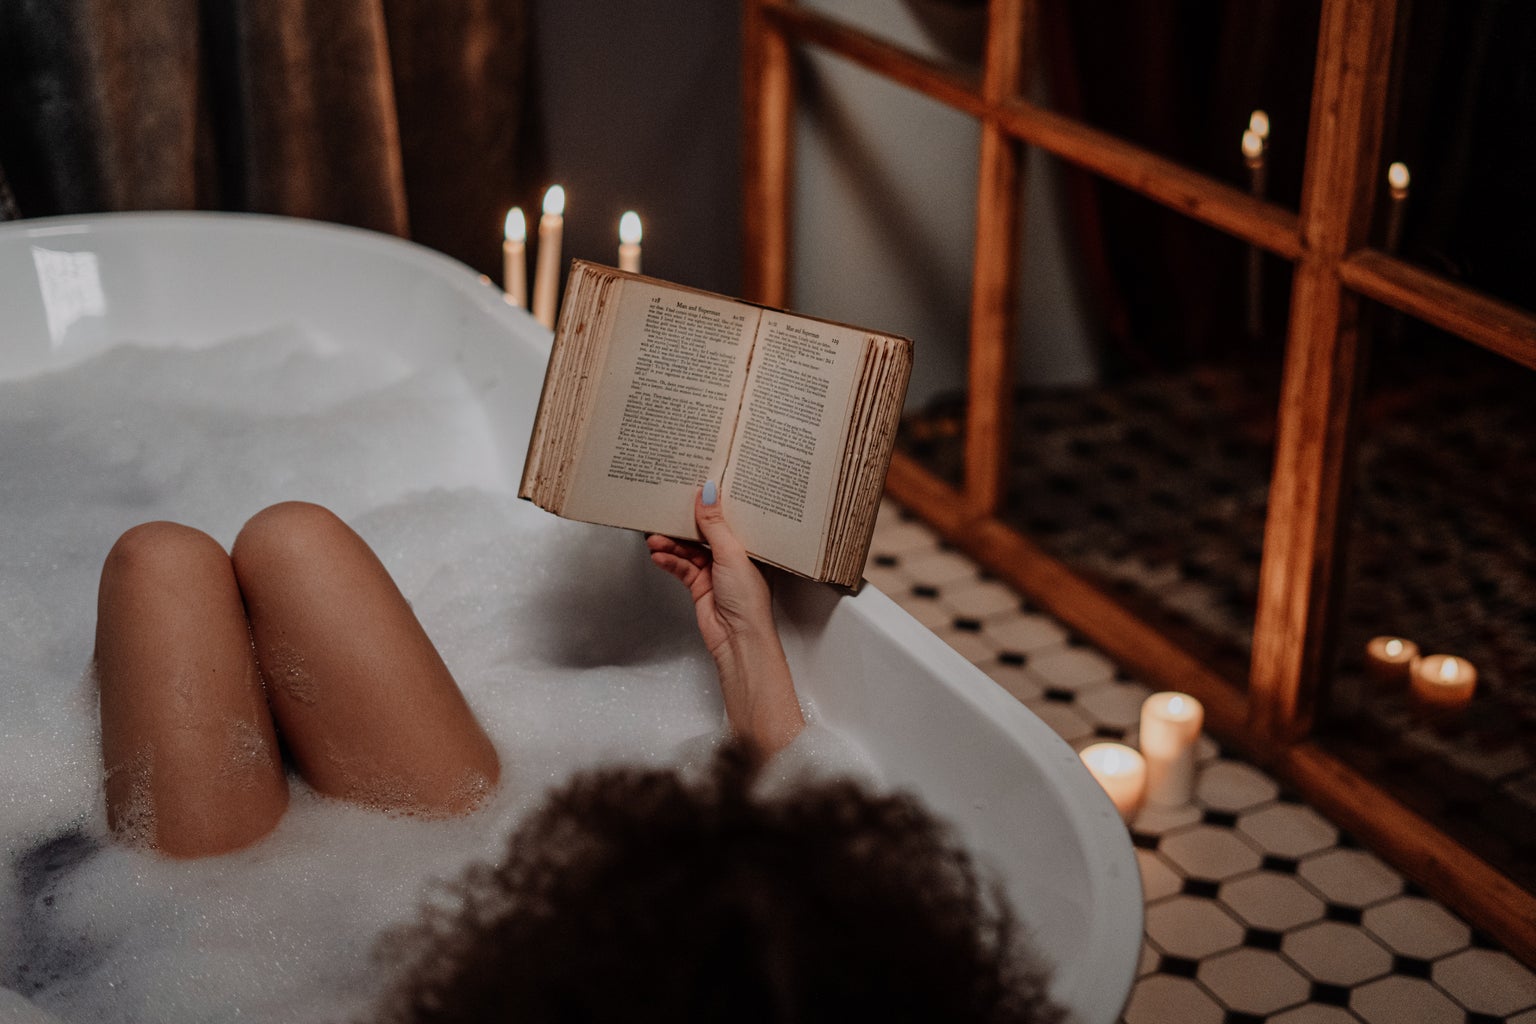 A woman in a bathtub reads a book.